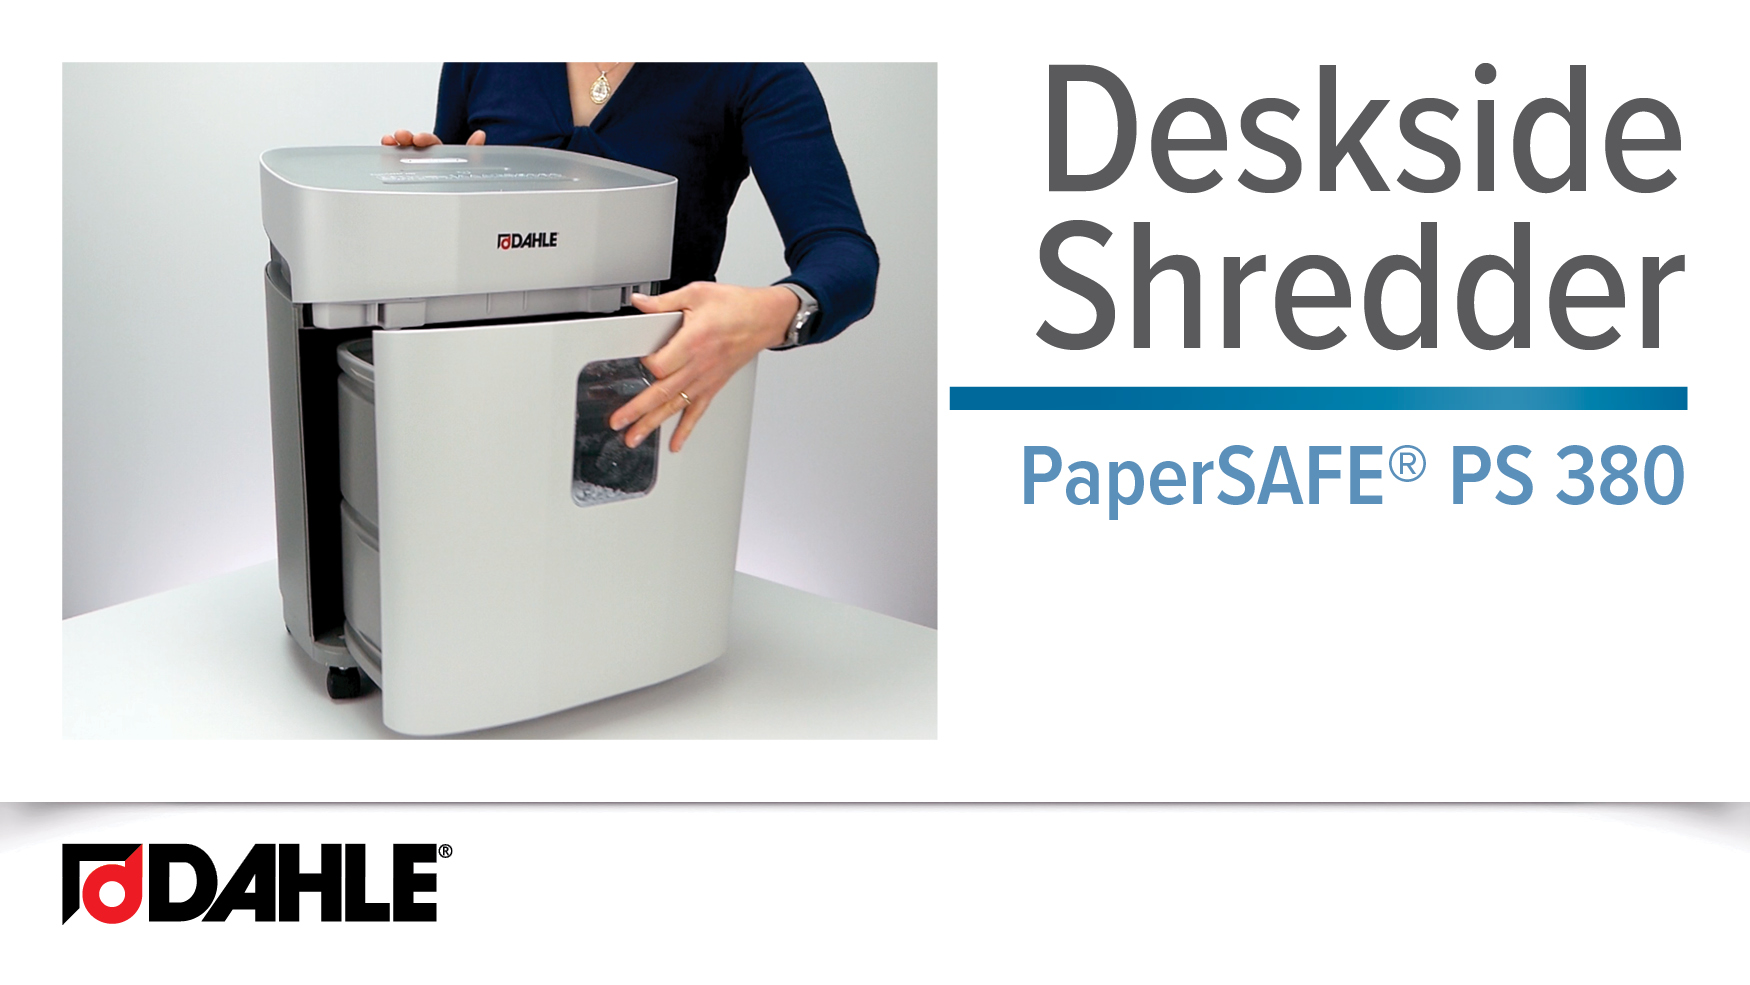 <big><strong>PaperSAFE® PS 380 </strong></big><br>Deskside Shredder